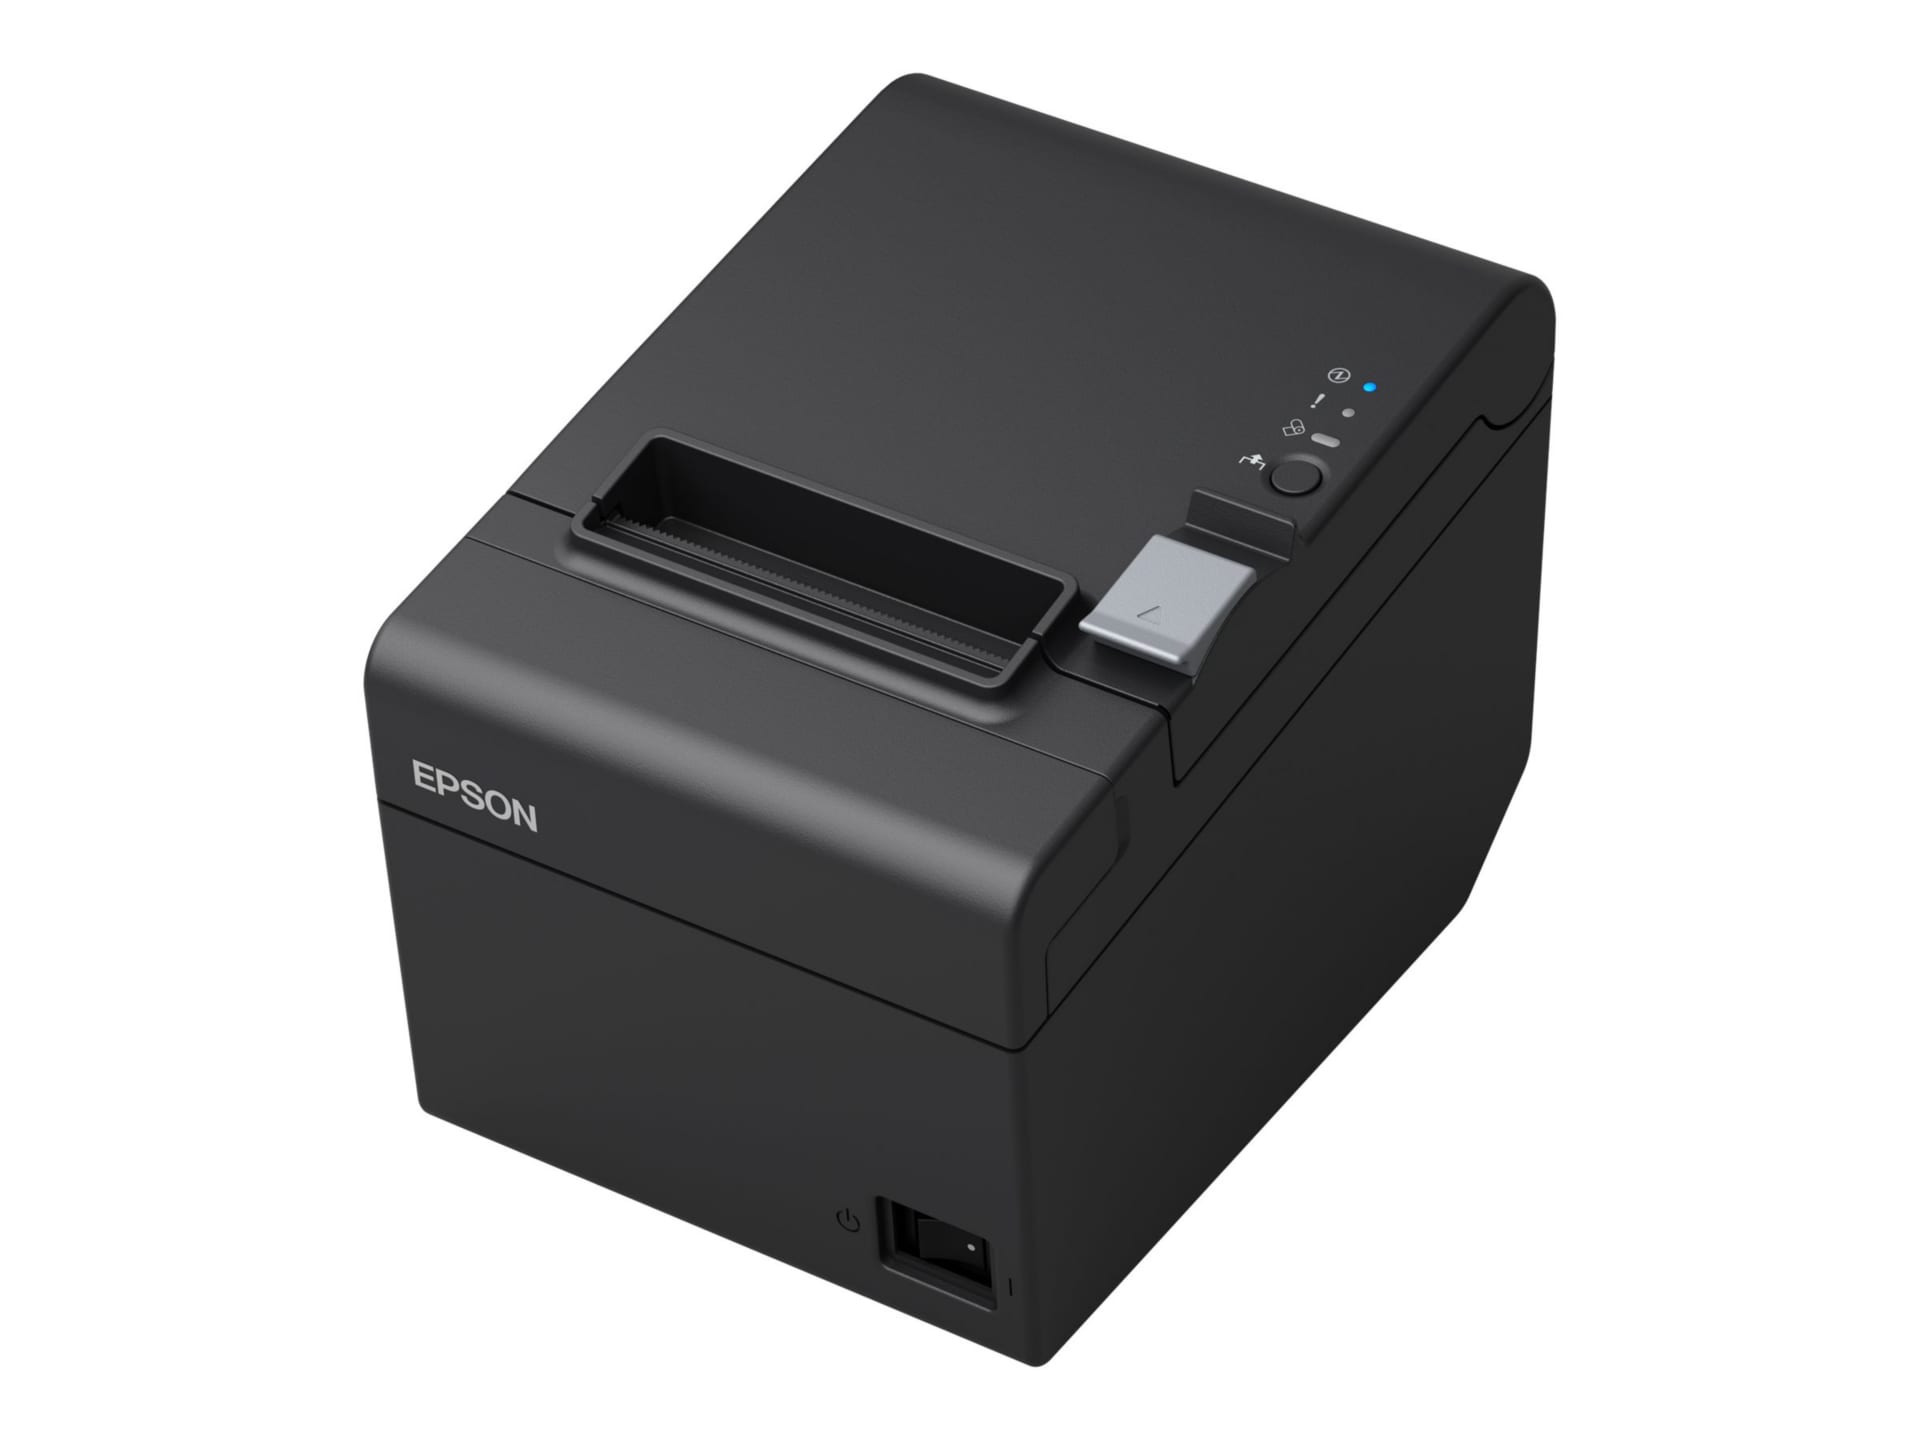 Epson TM-T20III Thermal POS Receipt Printer